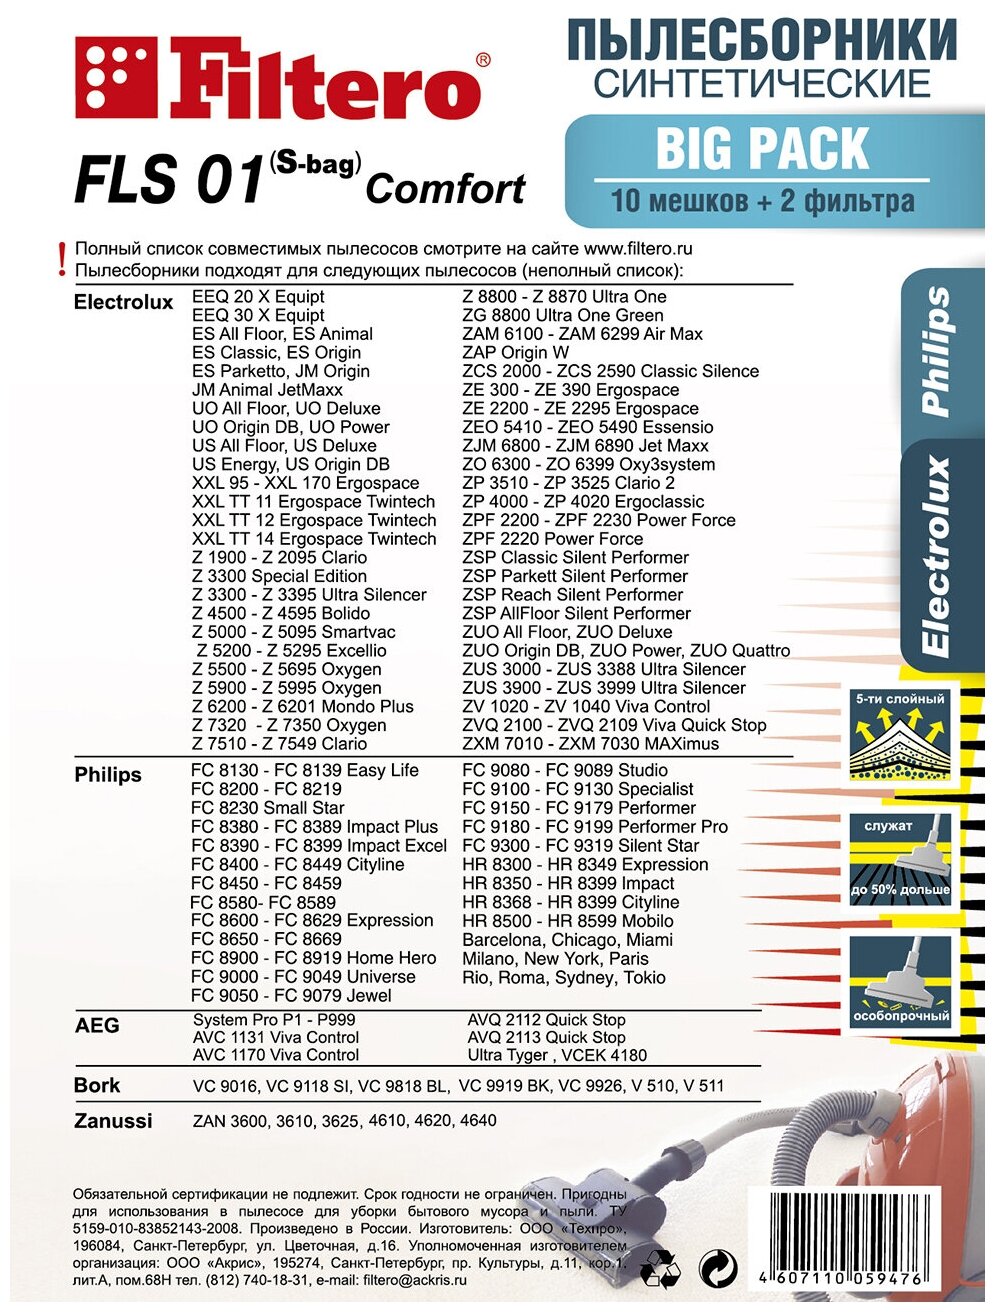 Мешки-пылесборники Filtero FLS 01 (S-bag) Comfort Big Pack для пылесосов Electrolux Philips синтетический 10 ук + моторный и микрофильтр